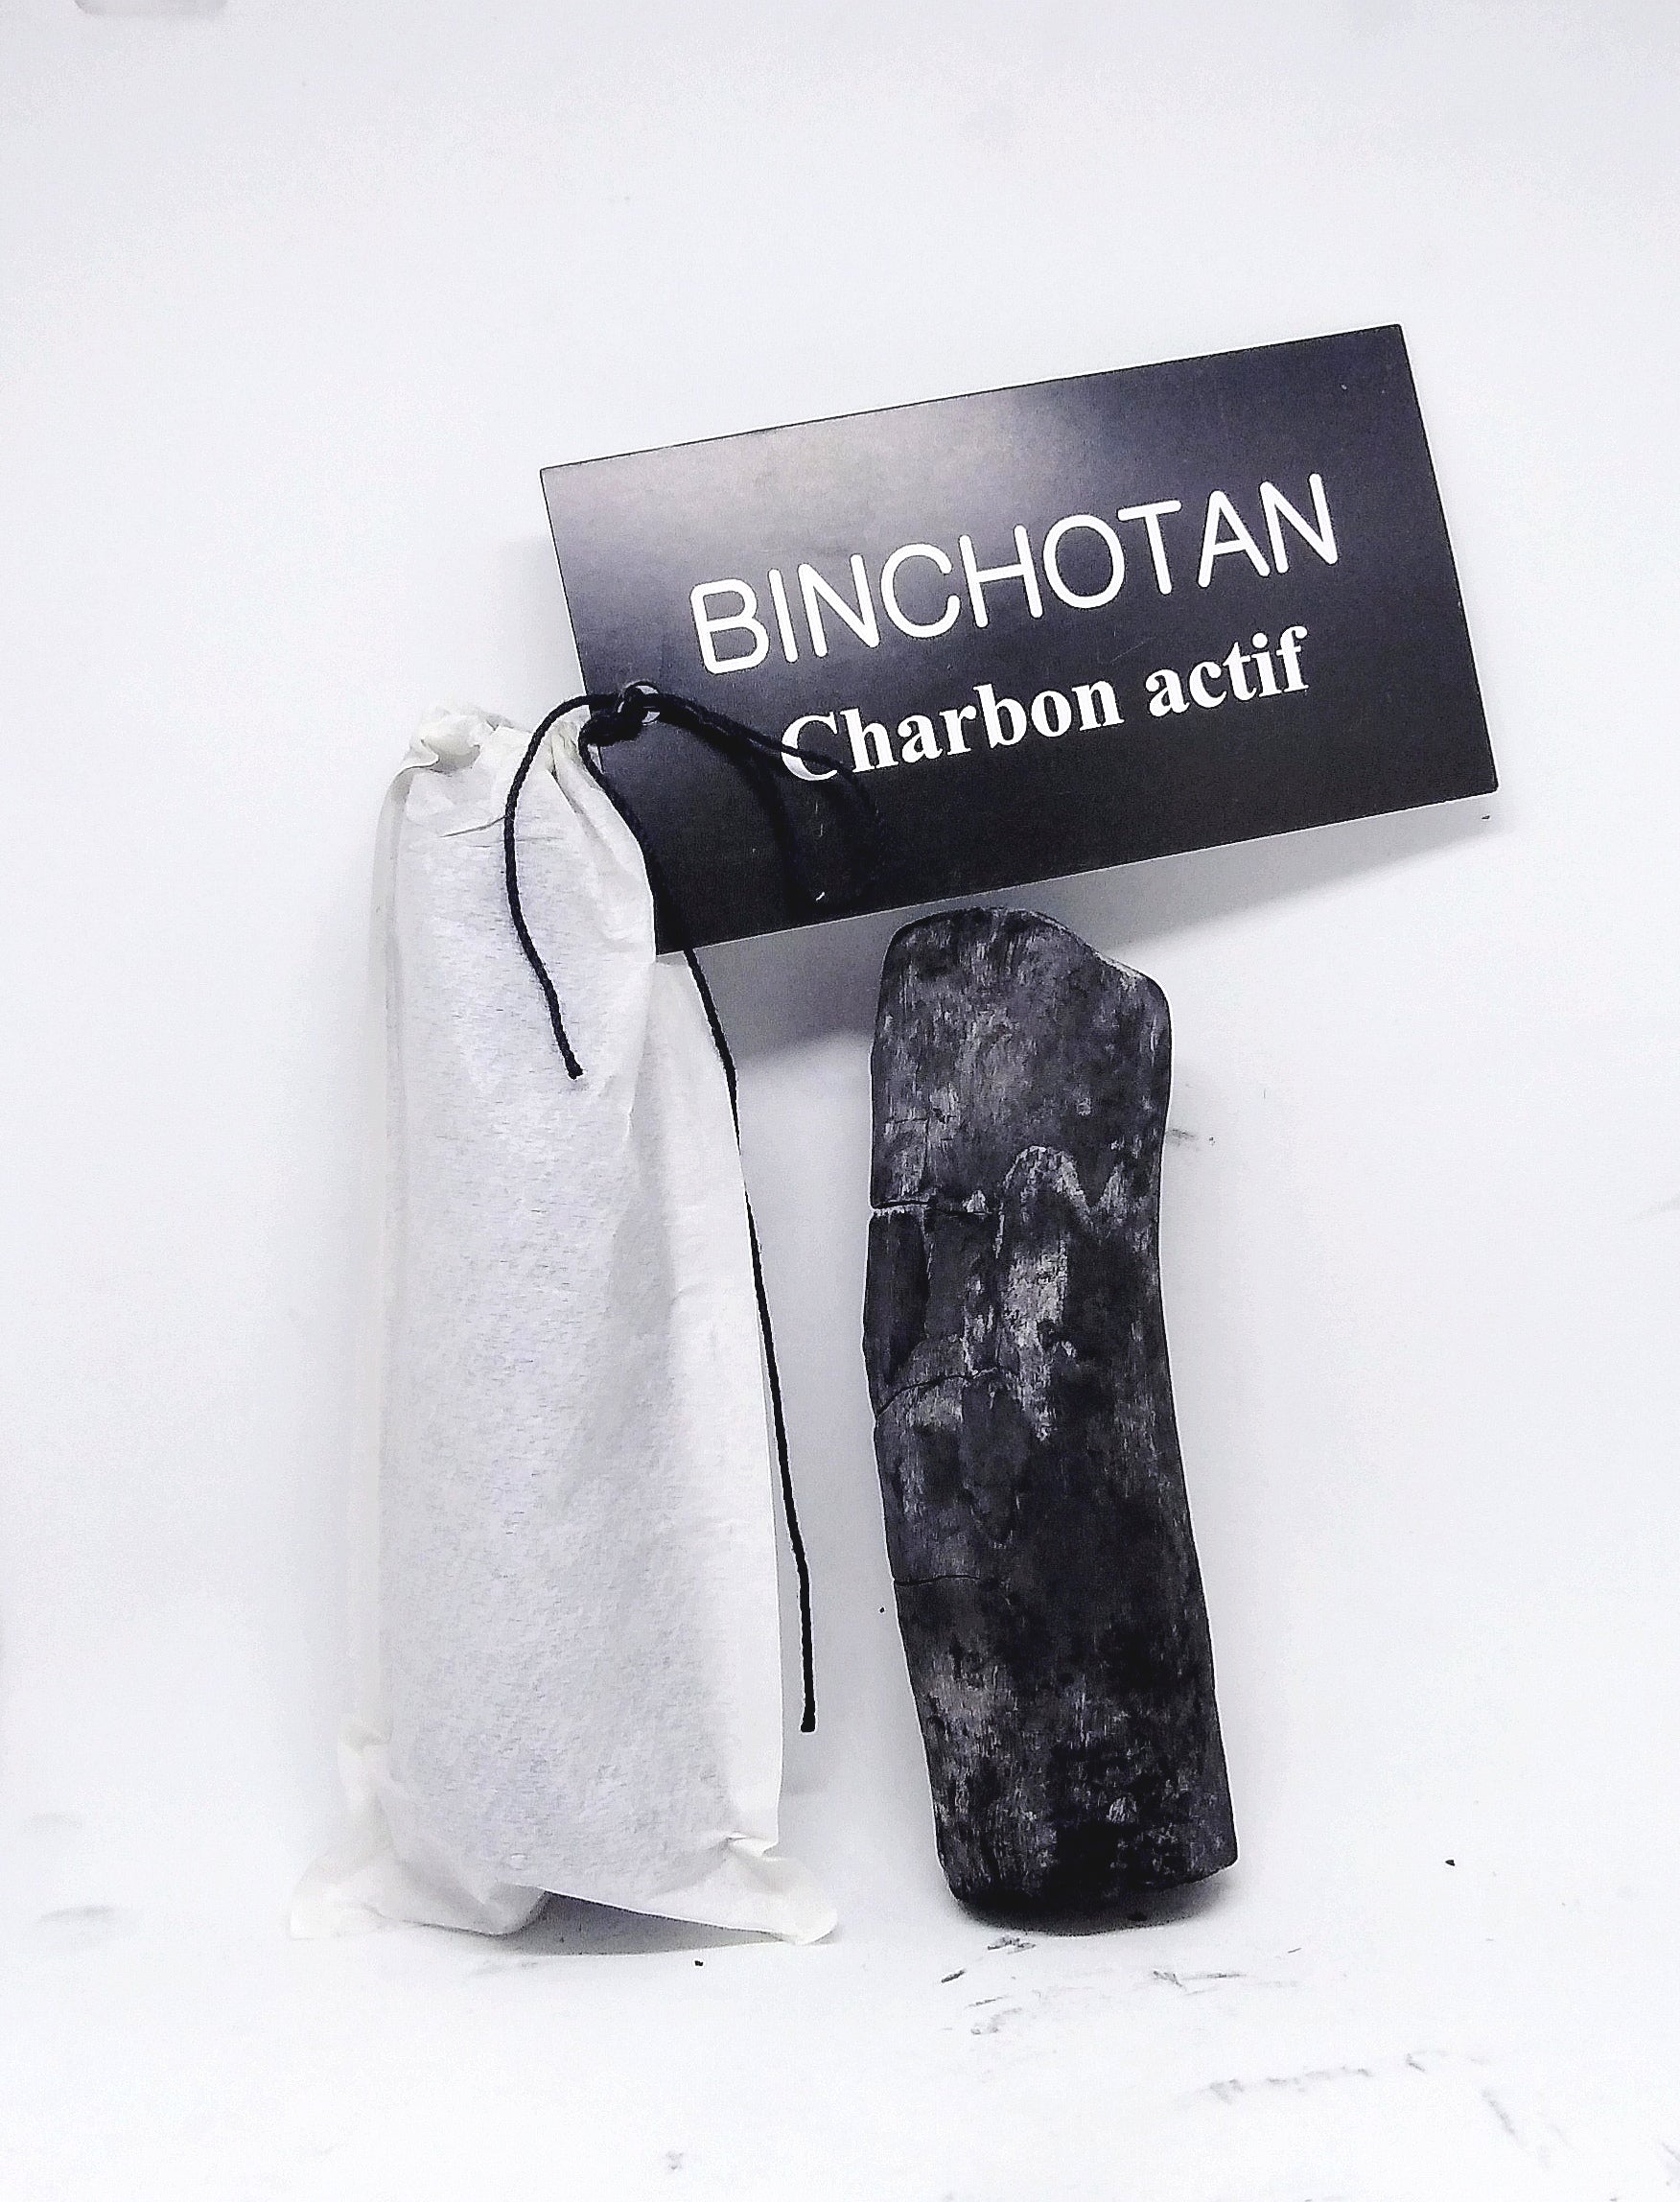 Charbon de bois Binchotan pour filtrer l'eau 100% naturel